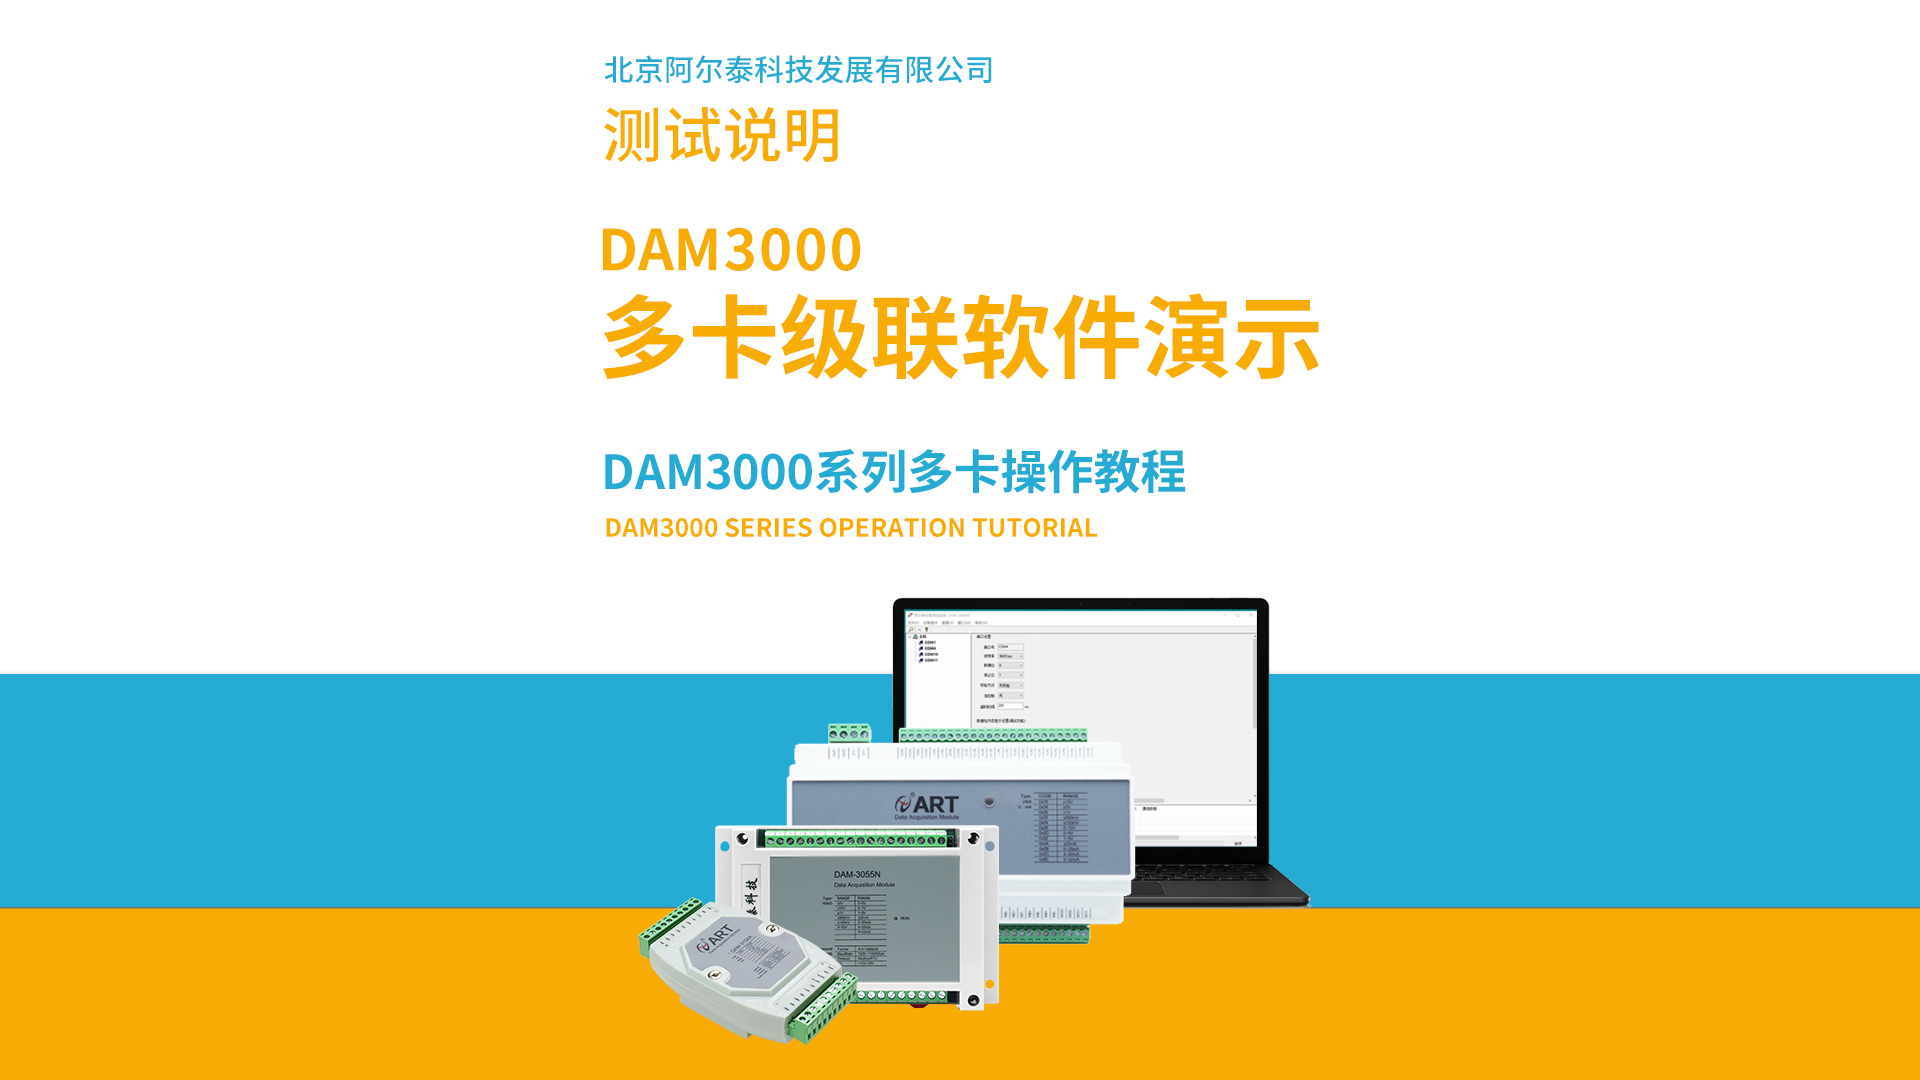 阿尔泰科技DAM3000系列多卡级联软件操作教程# #从入门到精通，一起讲透元器件！  #数据采集 #工控 